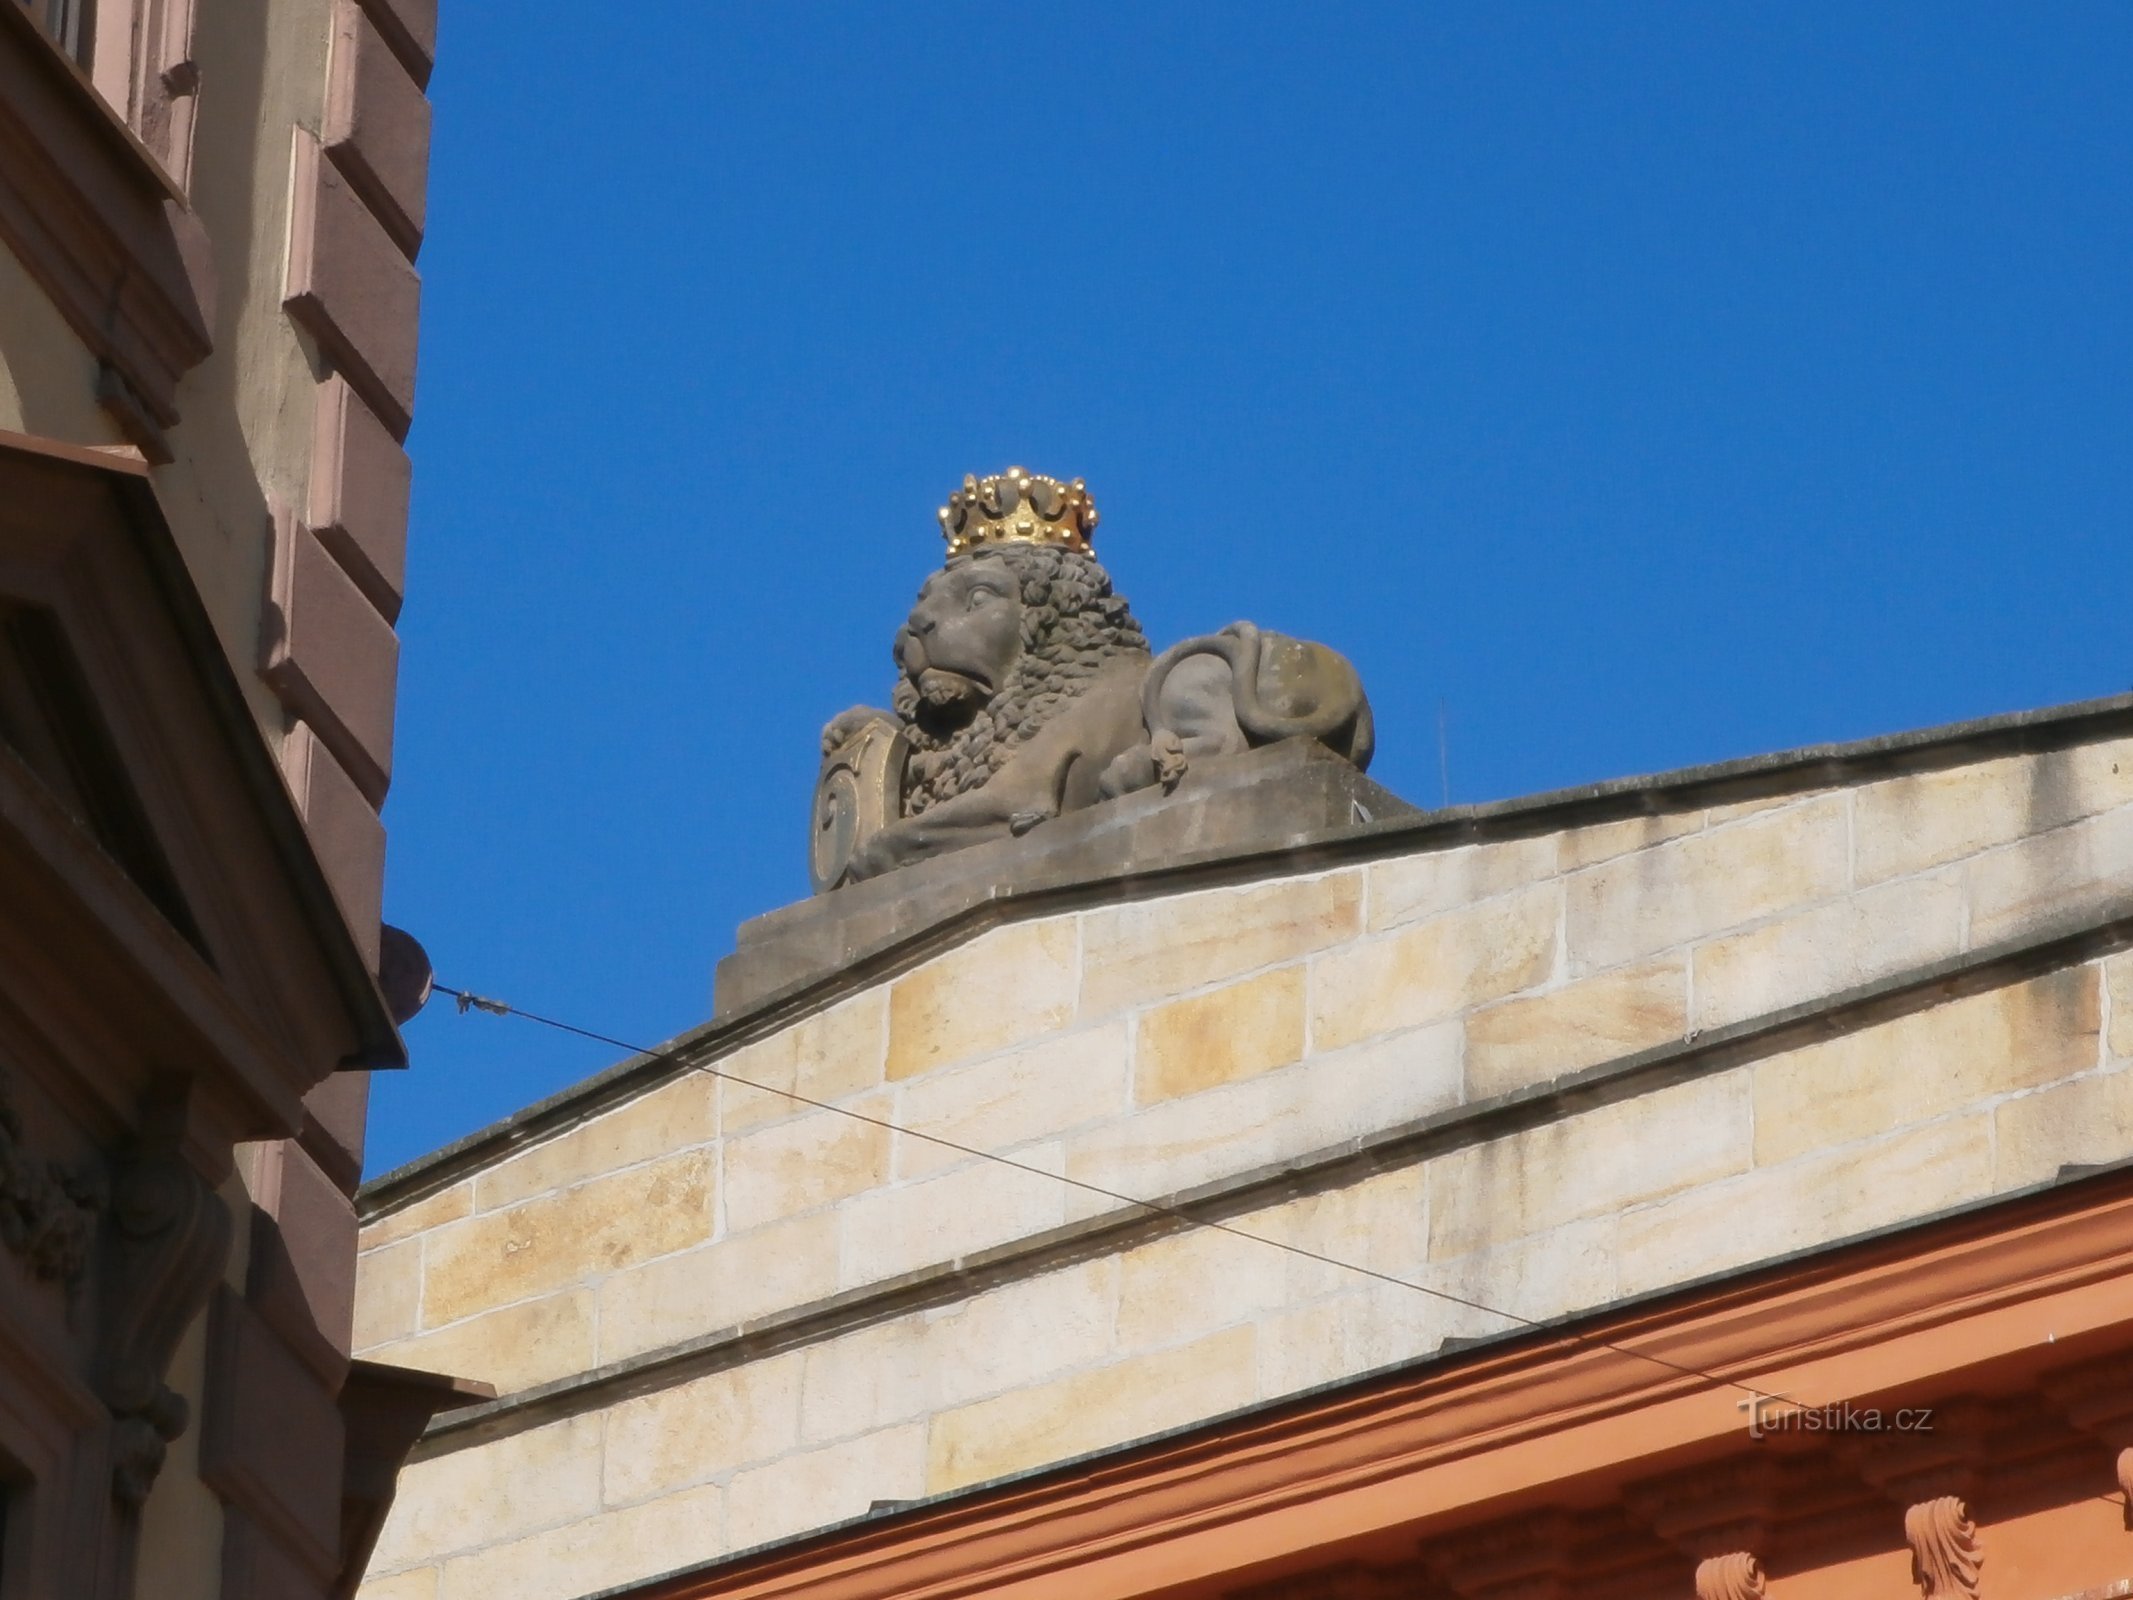 Lion statue at No. 230 (Hradec Králové, 18.6.2016/XNUMX/XNUMX)